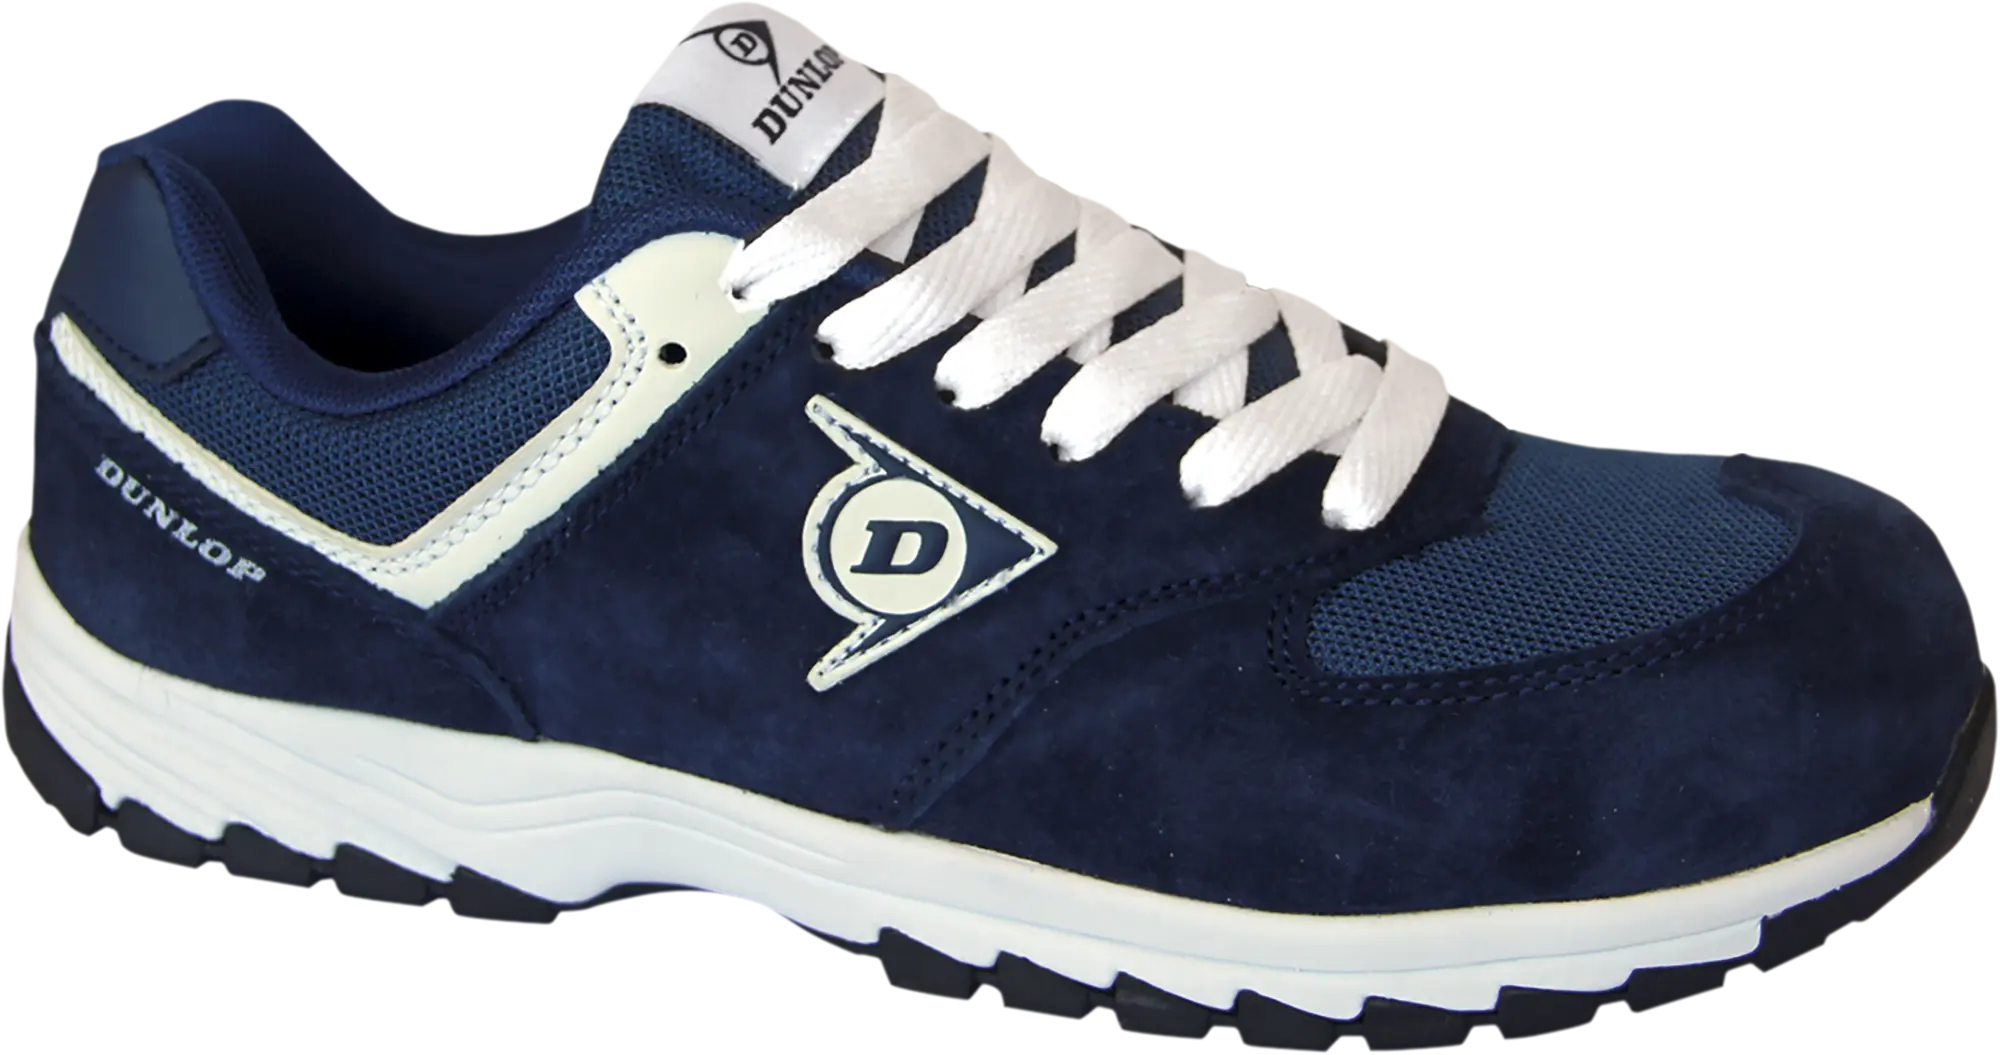 Dunlop calzado de seguridad, deportivo s3 modelo flying arrow color azul - tall